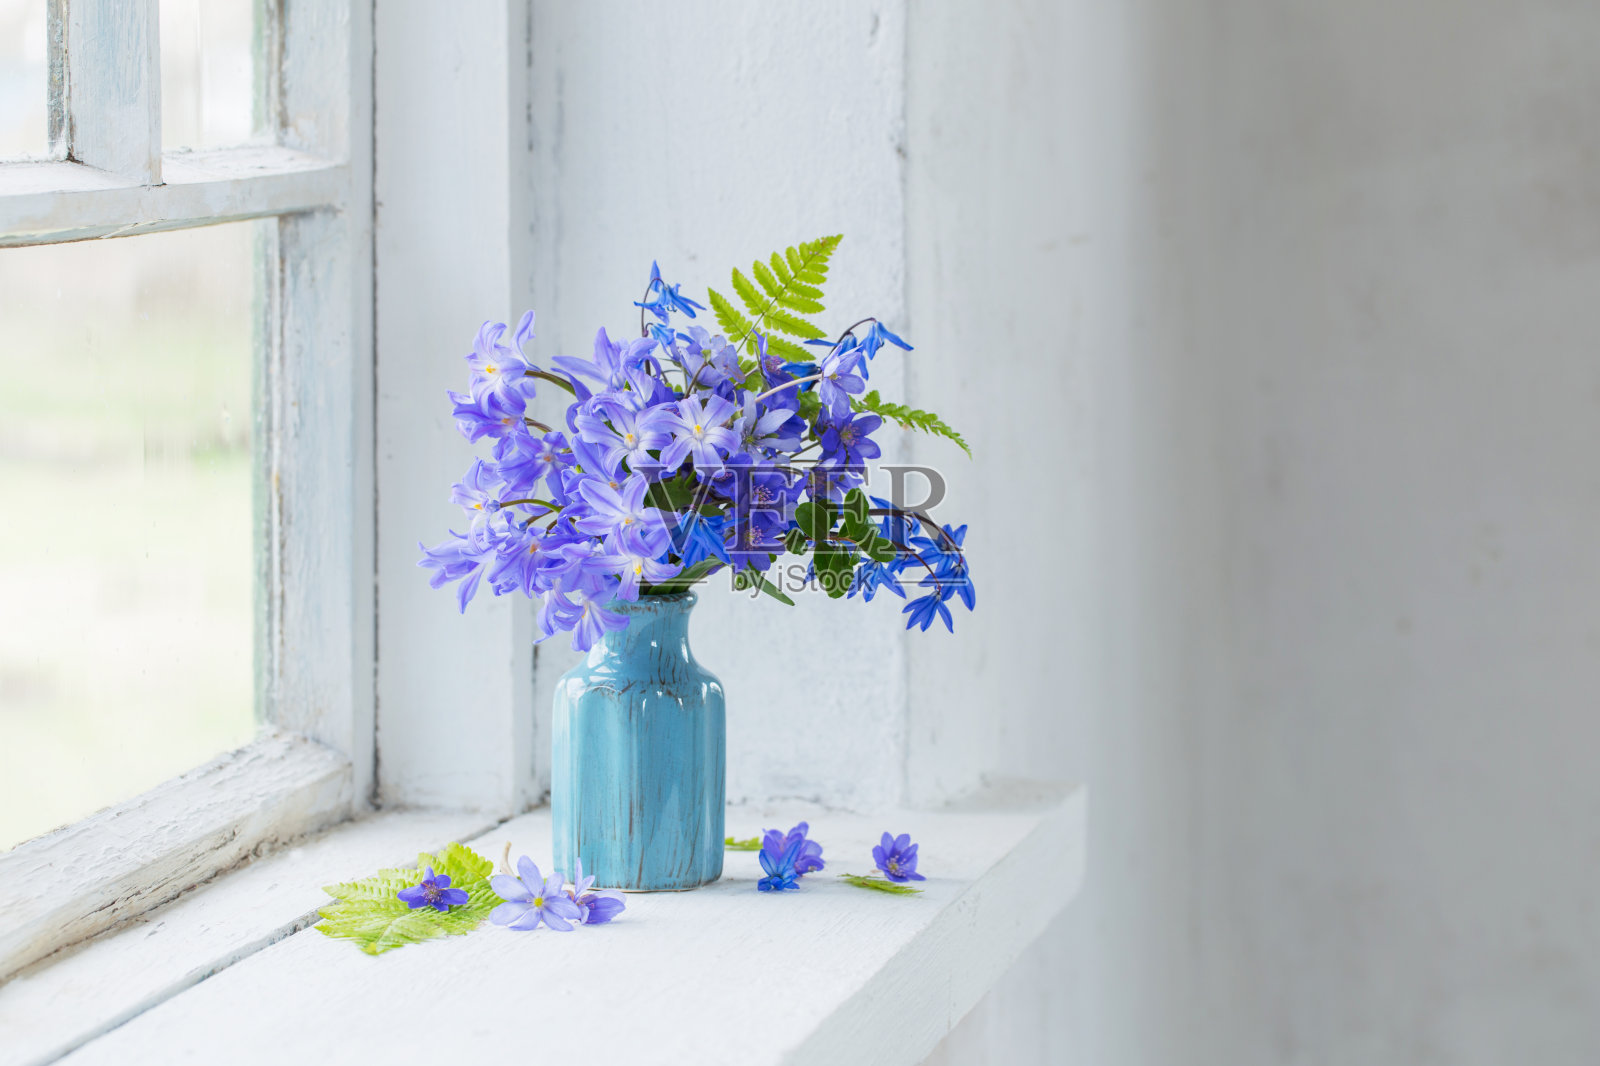 窗台上的蓝色雪花莲照片摄影图片